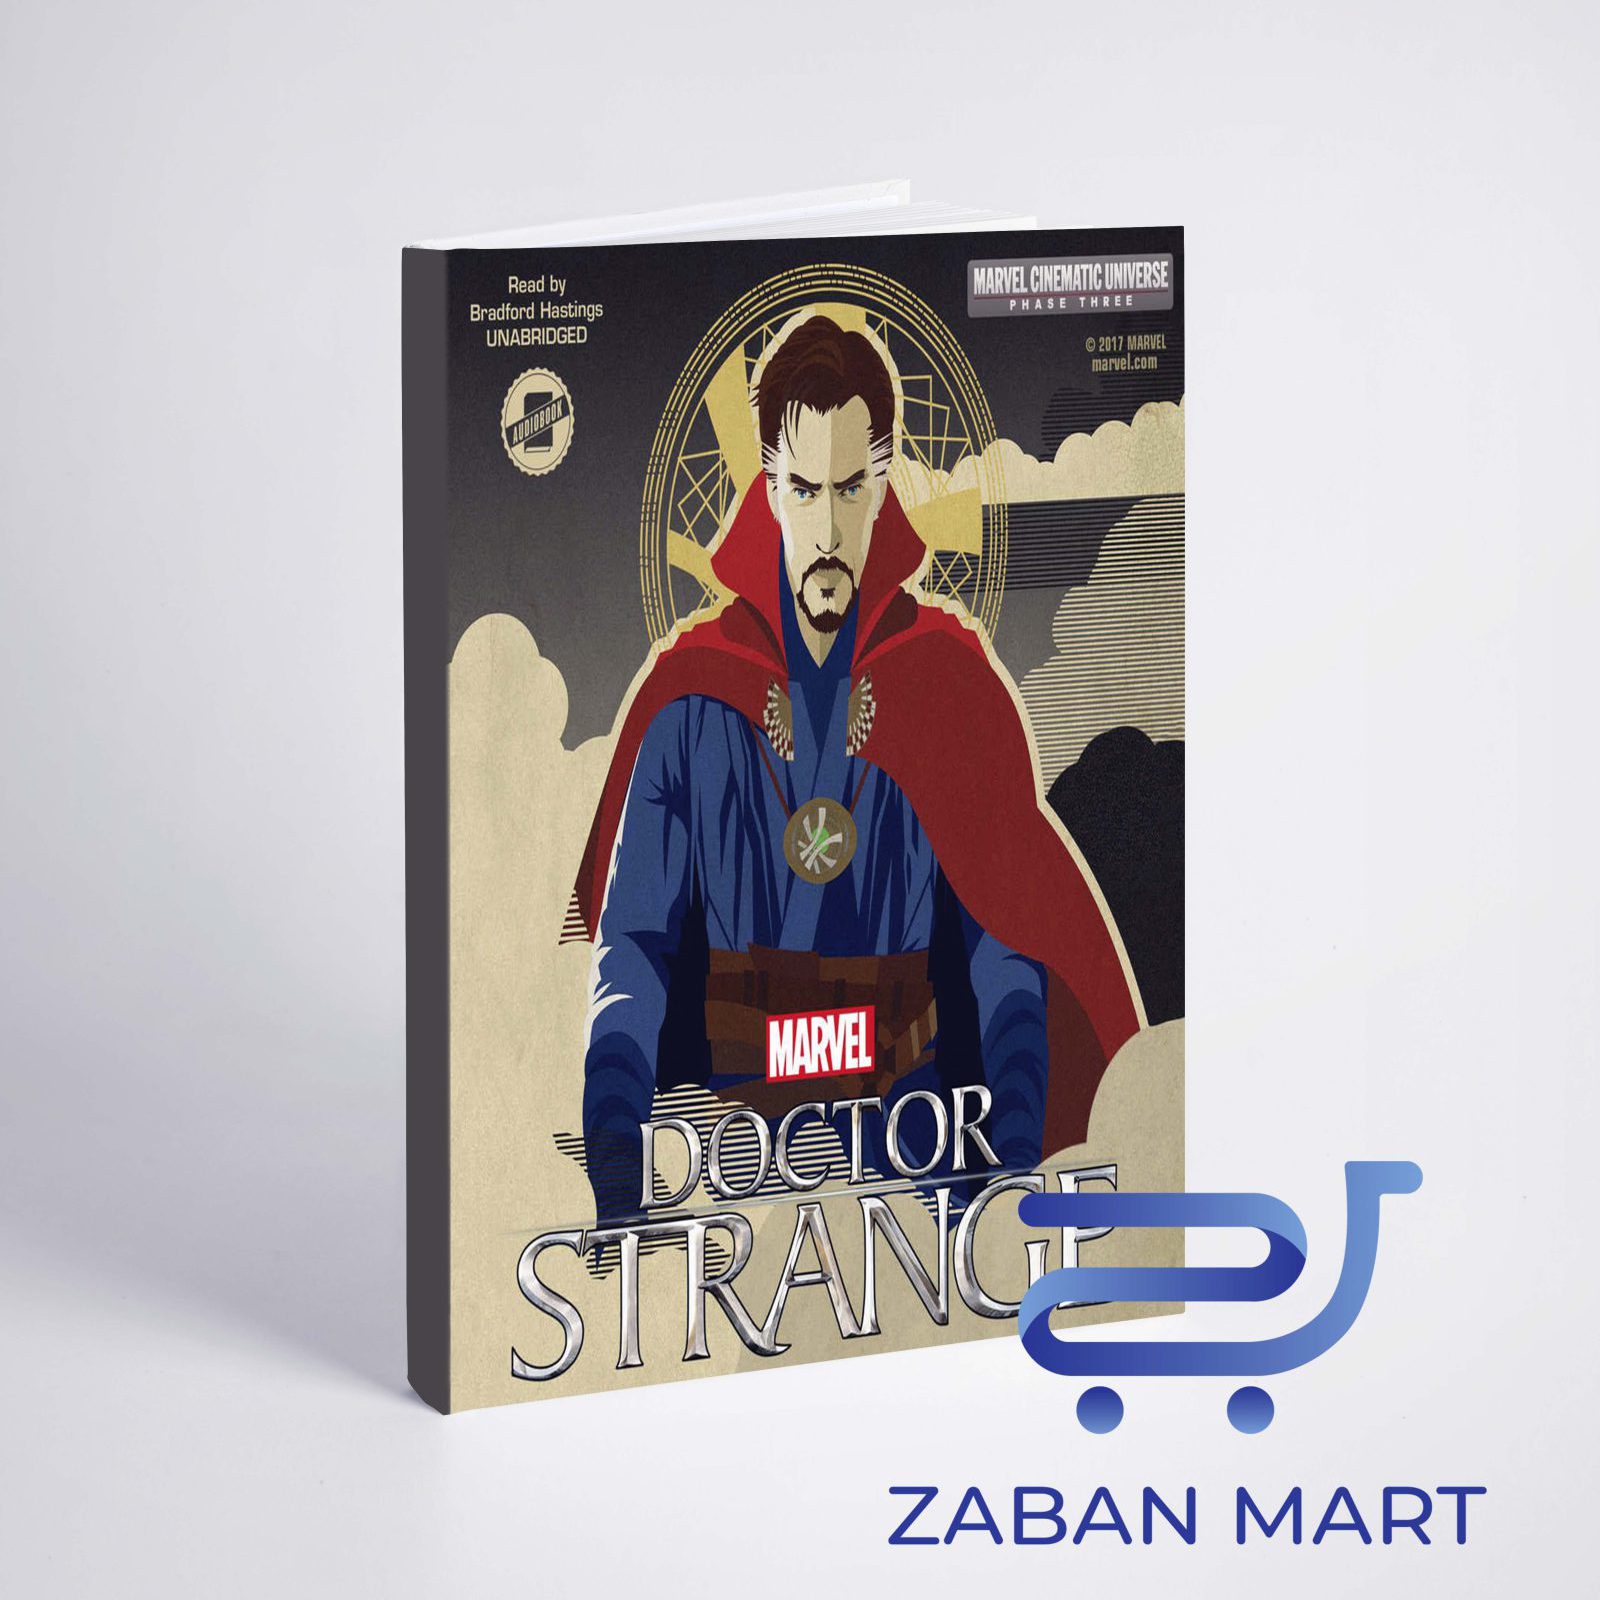 خرید کتاب فاز سه (دکتر استرنج) | Phase Three: MARVEL's Doctor Strange